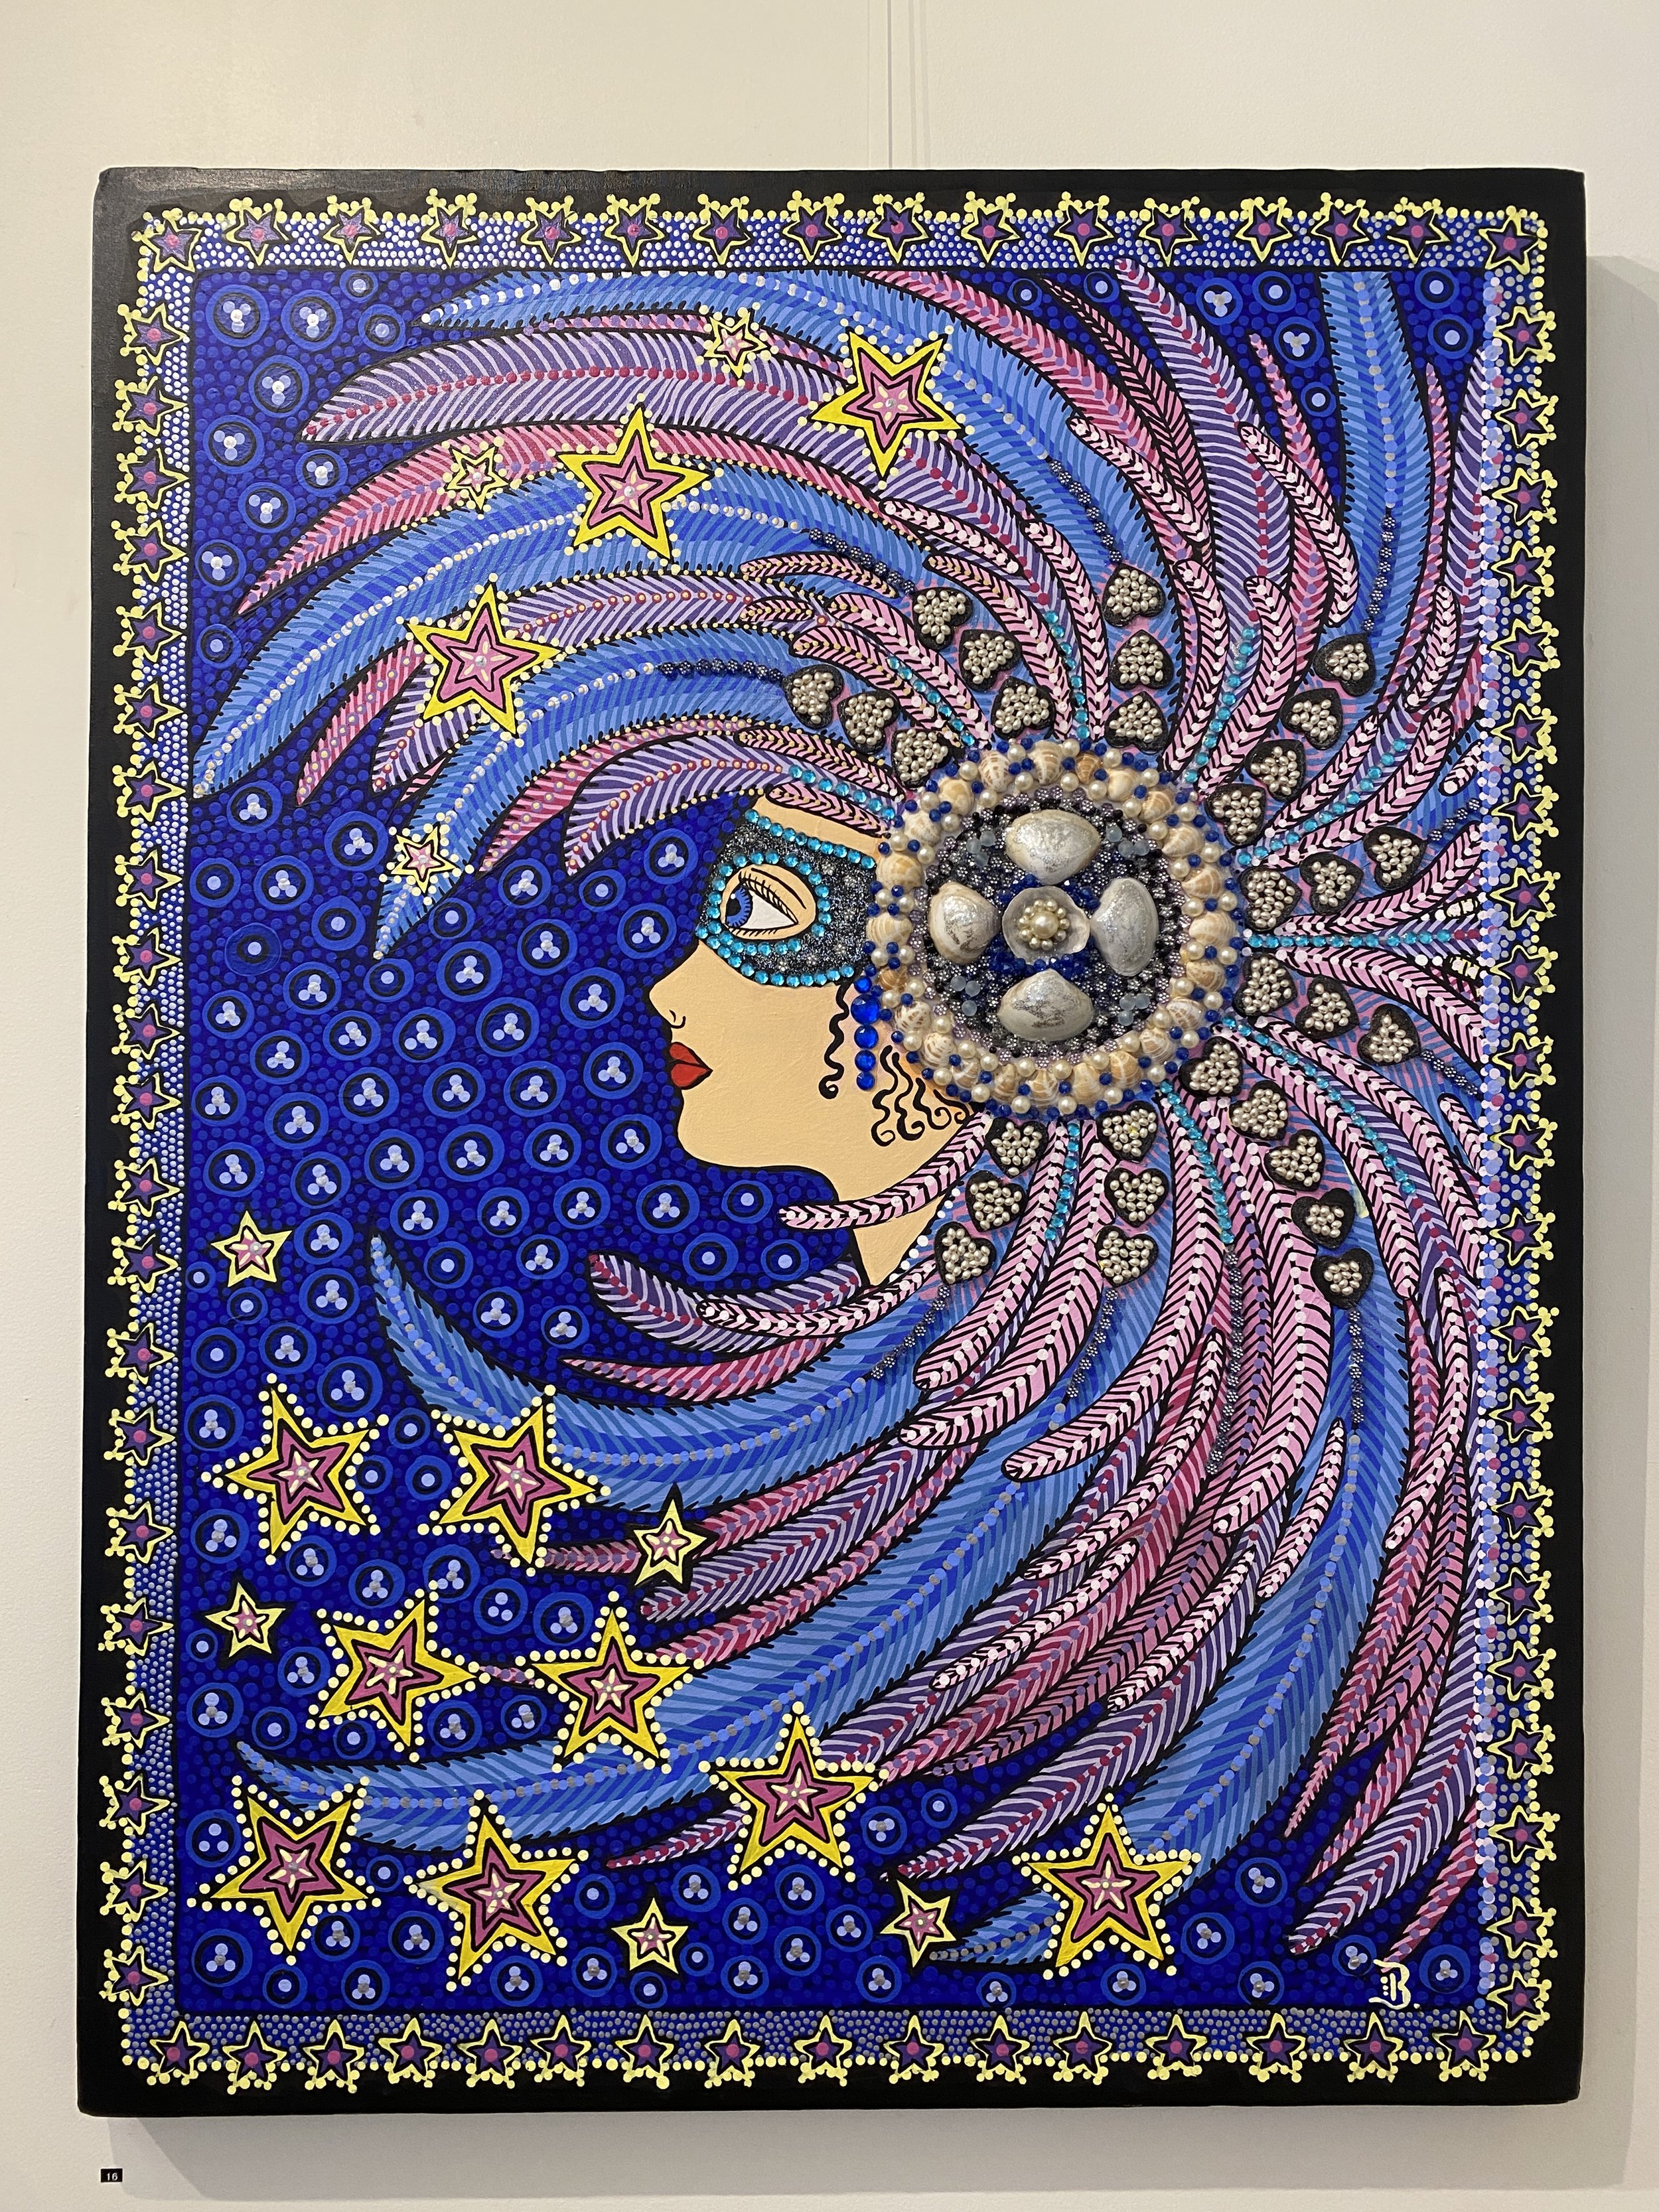 16. Starry Night | 125x96cm, $750